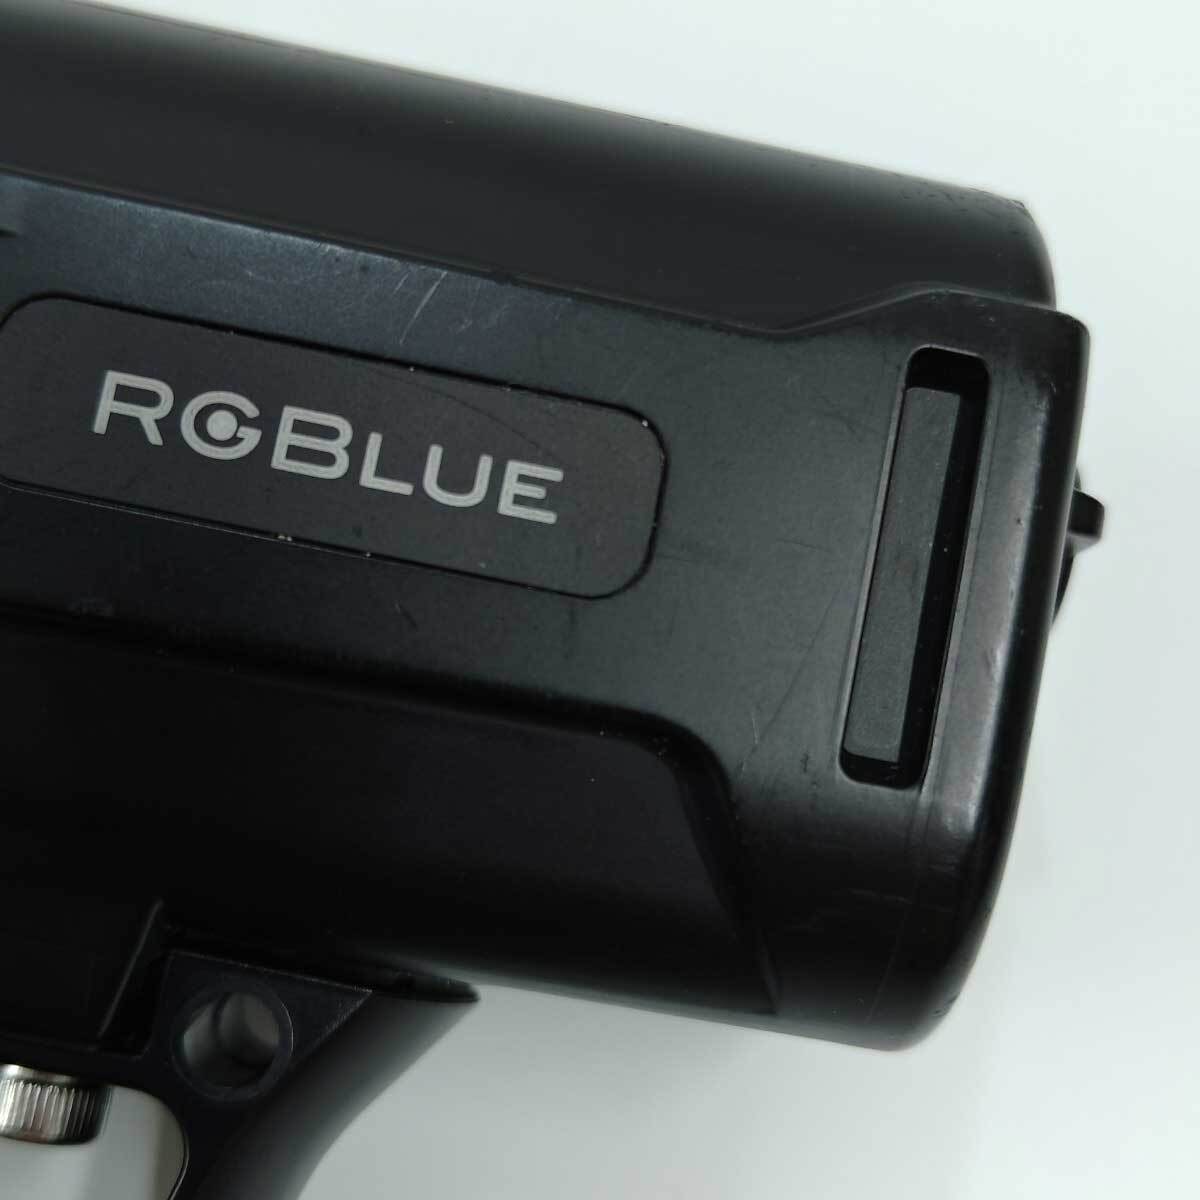 【中古】RGBlue バッテリーモジュール システム02:re スキューバダイビング用品 水中ライト BM6721L_画像4